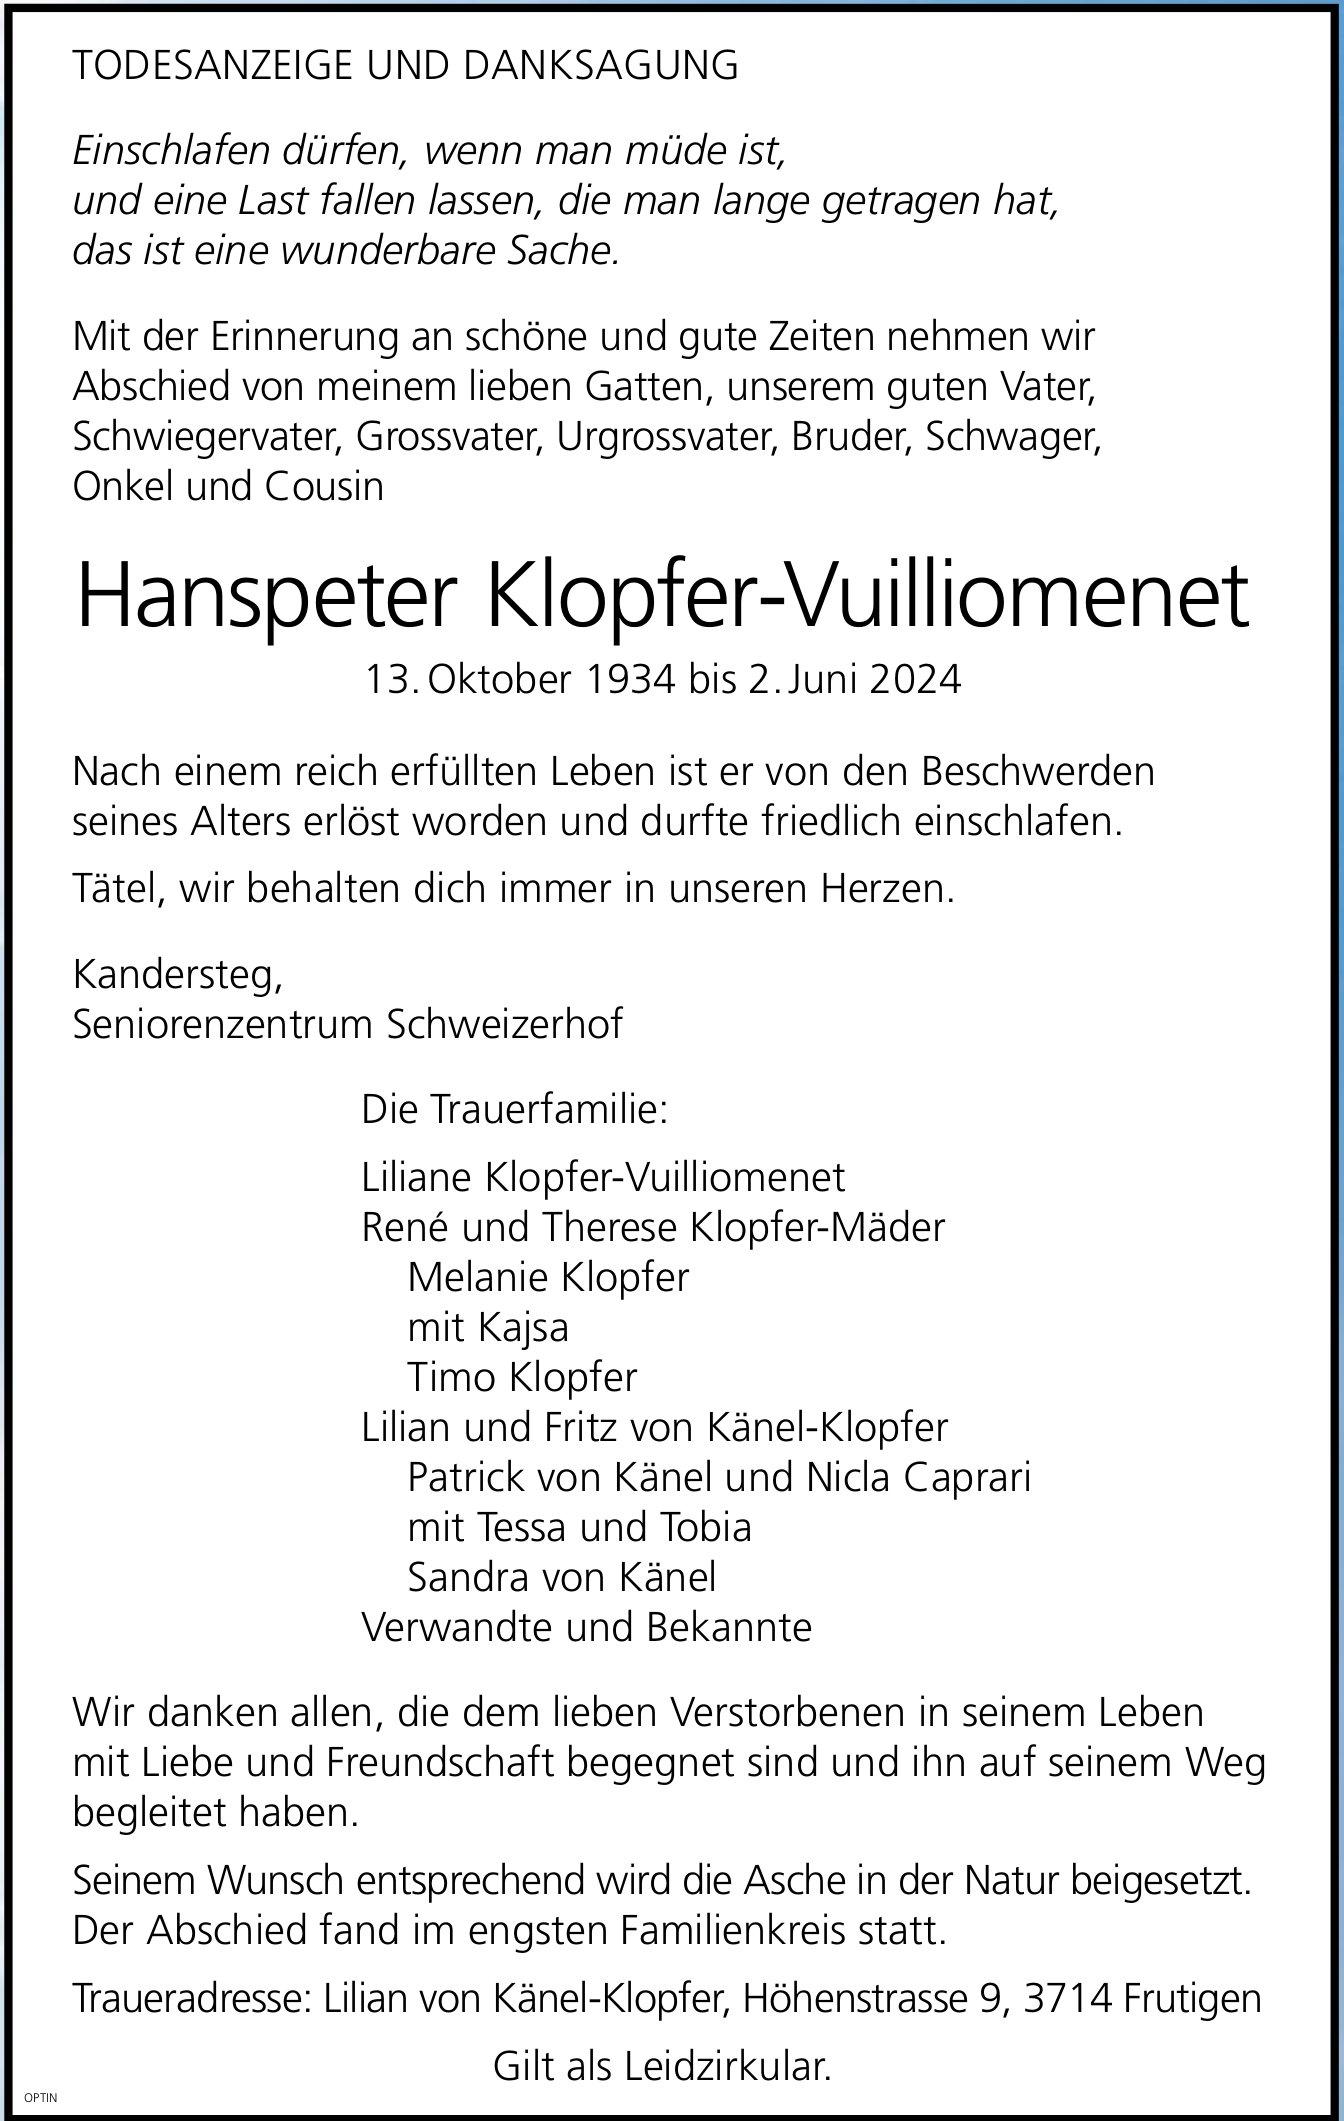 Hanspeter Klopfer-Vuilliomenet, Juni 2024 / TA